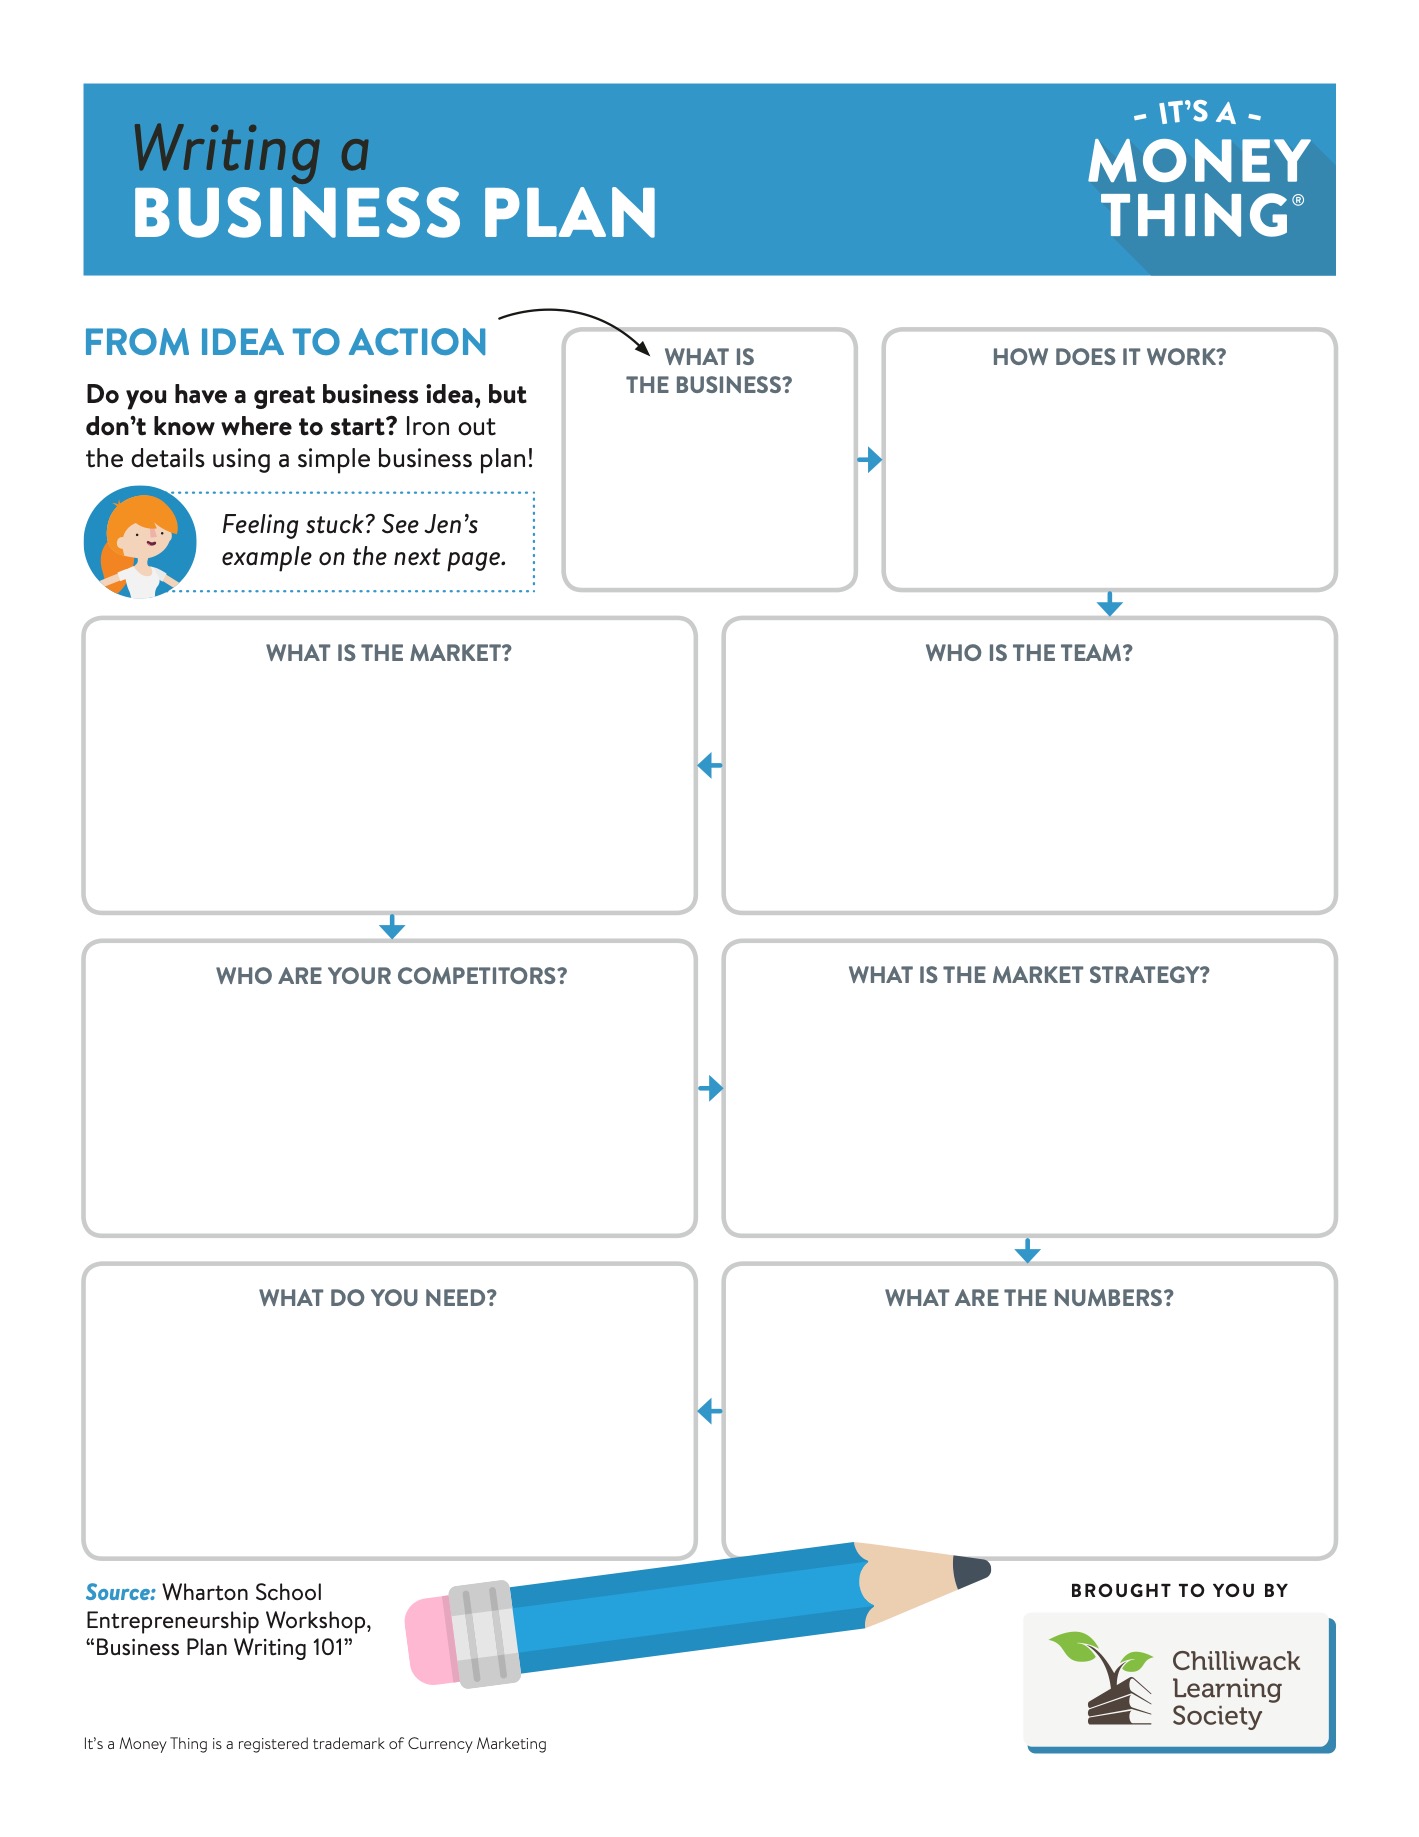 Writing a business plan handout